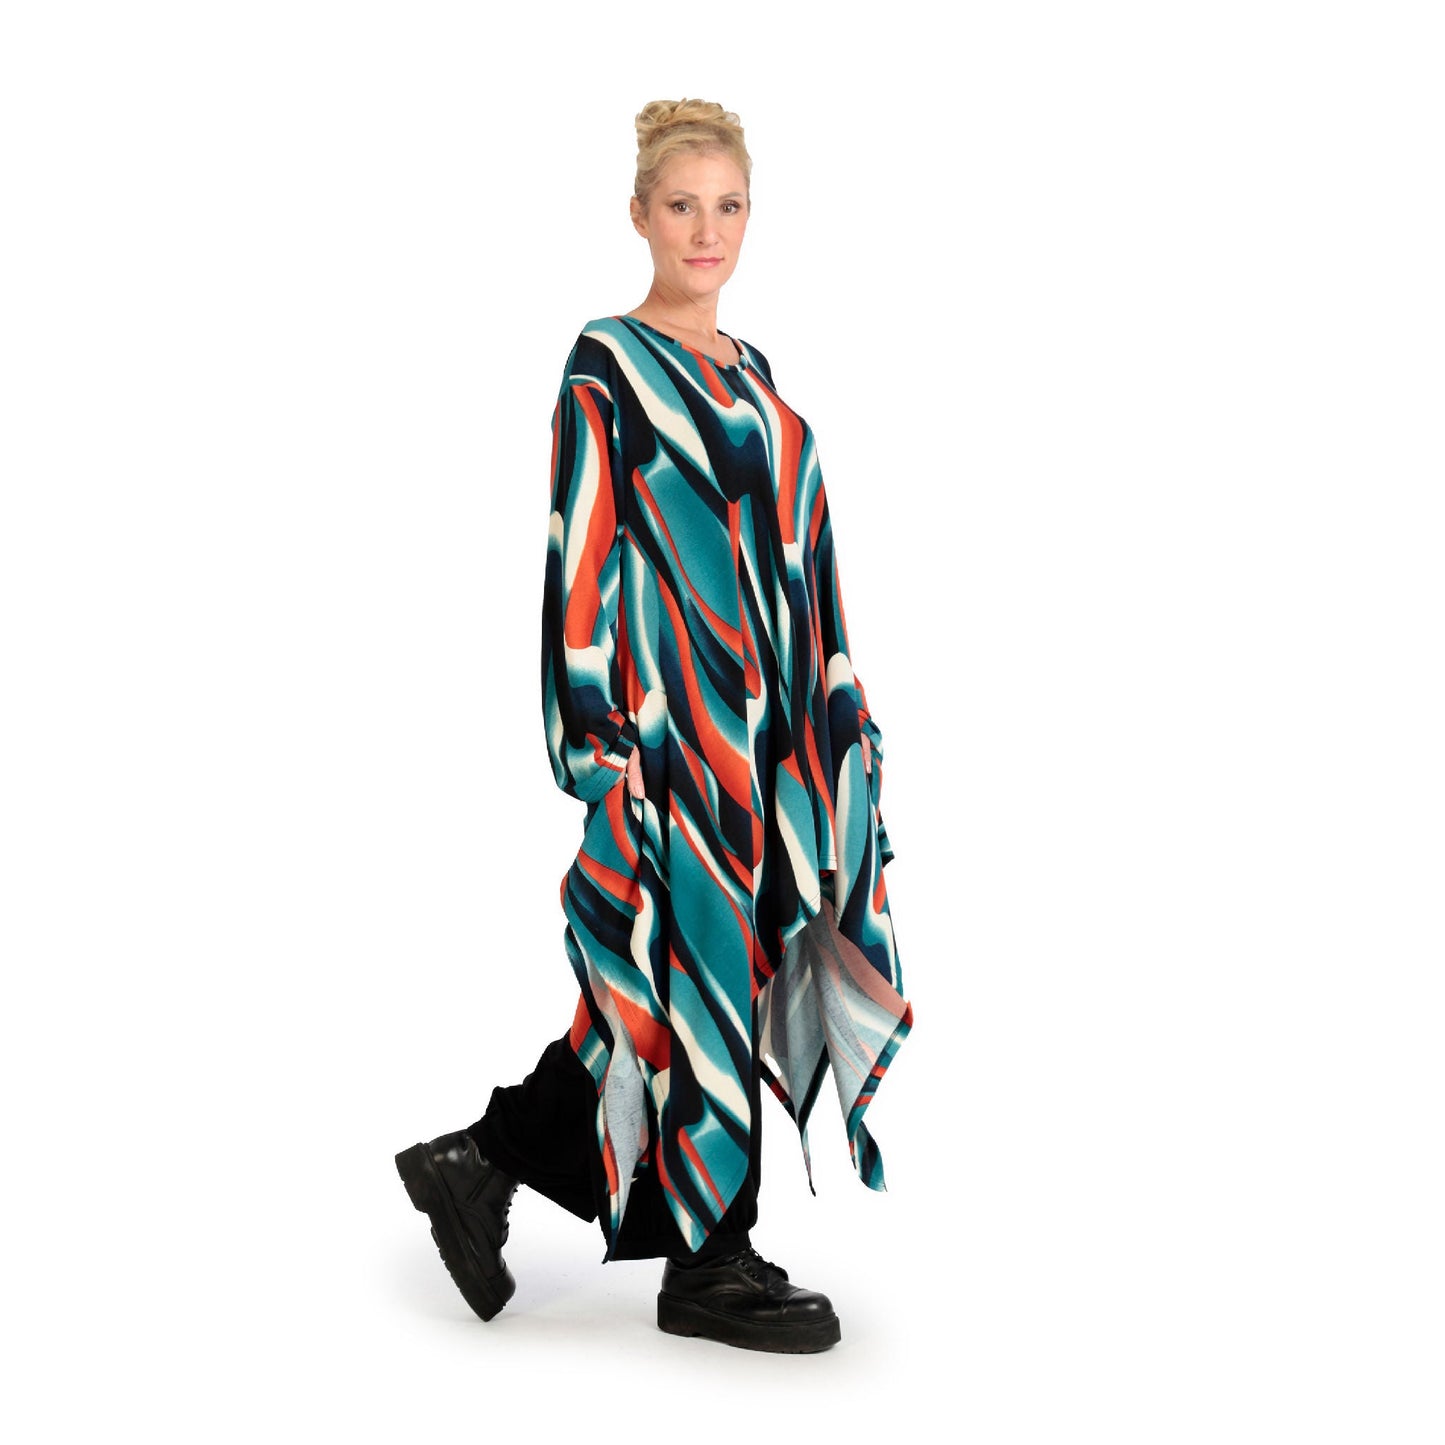 Winter Kleid in A-Form aus weicher Feinstrick Qualität, Aurora in Blau-Orange-Schwarz